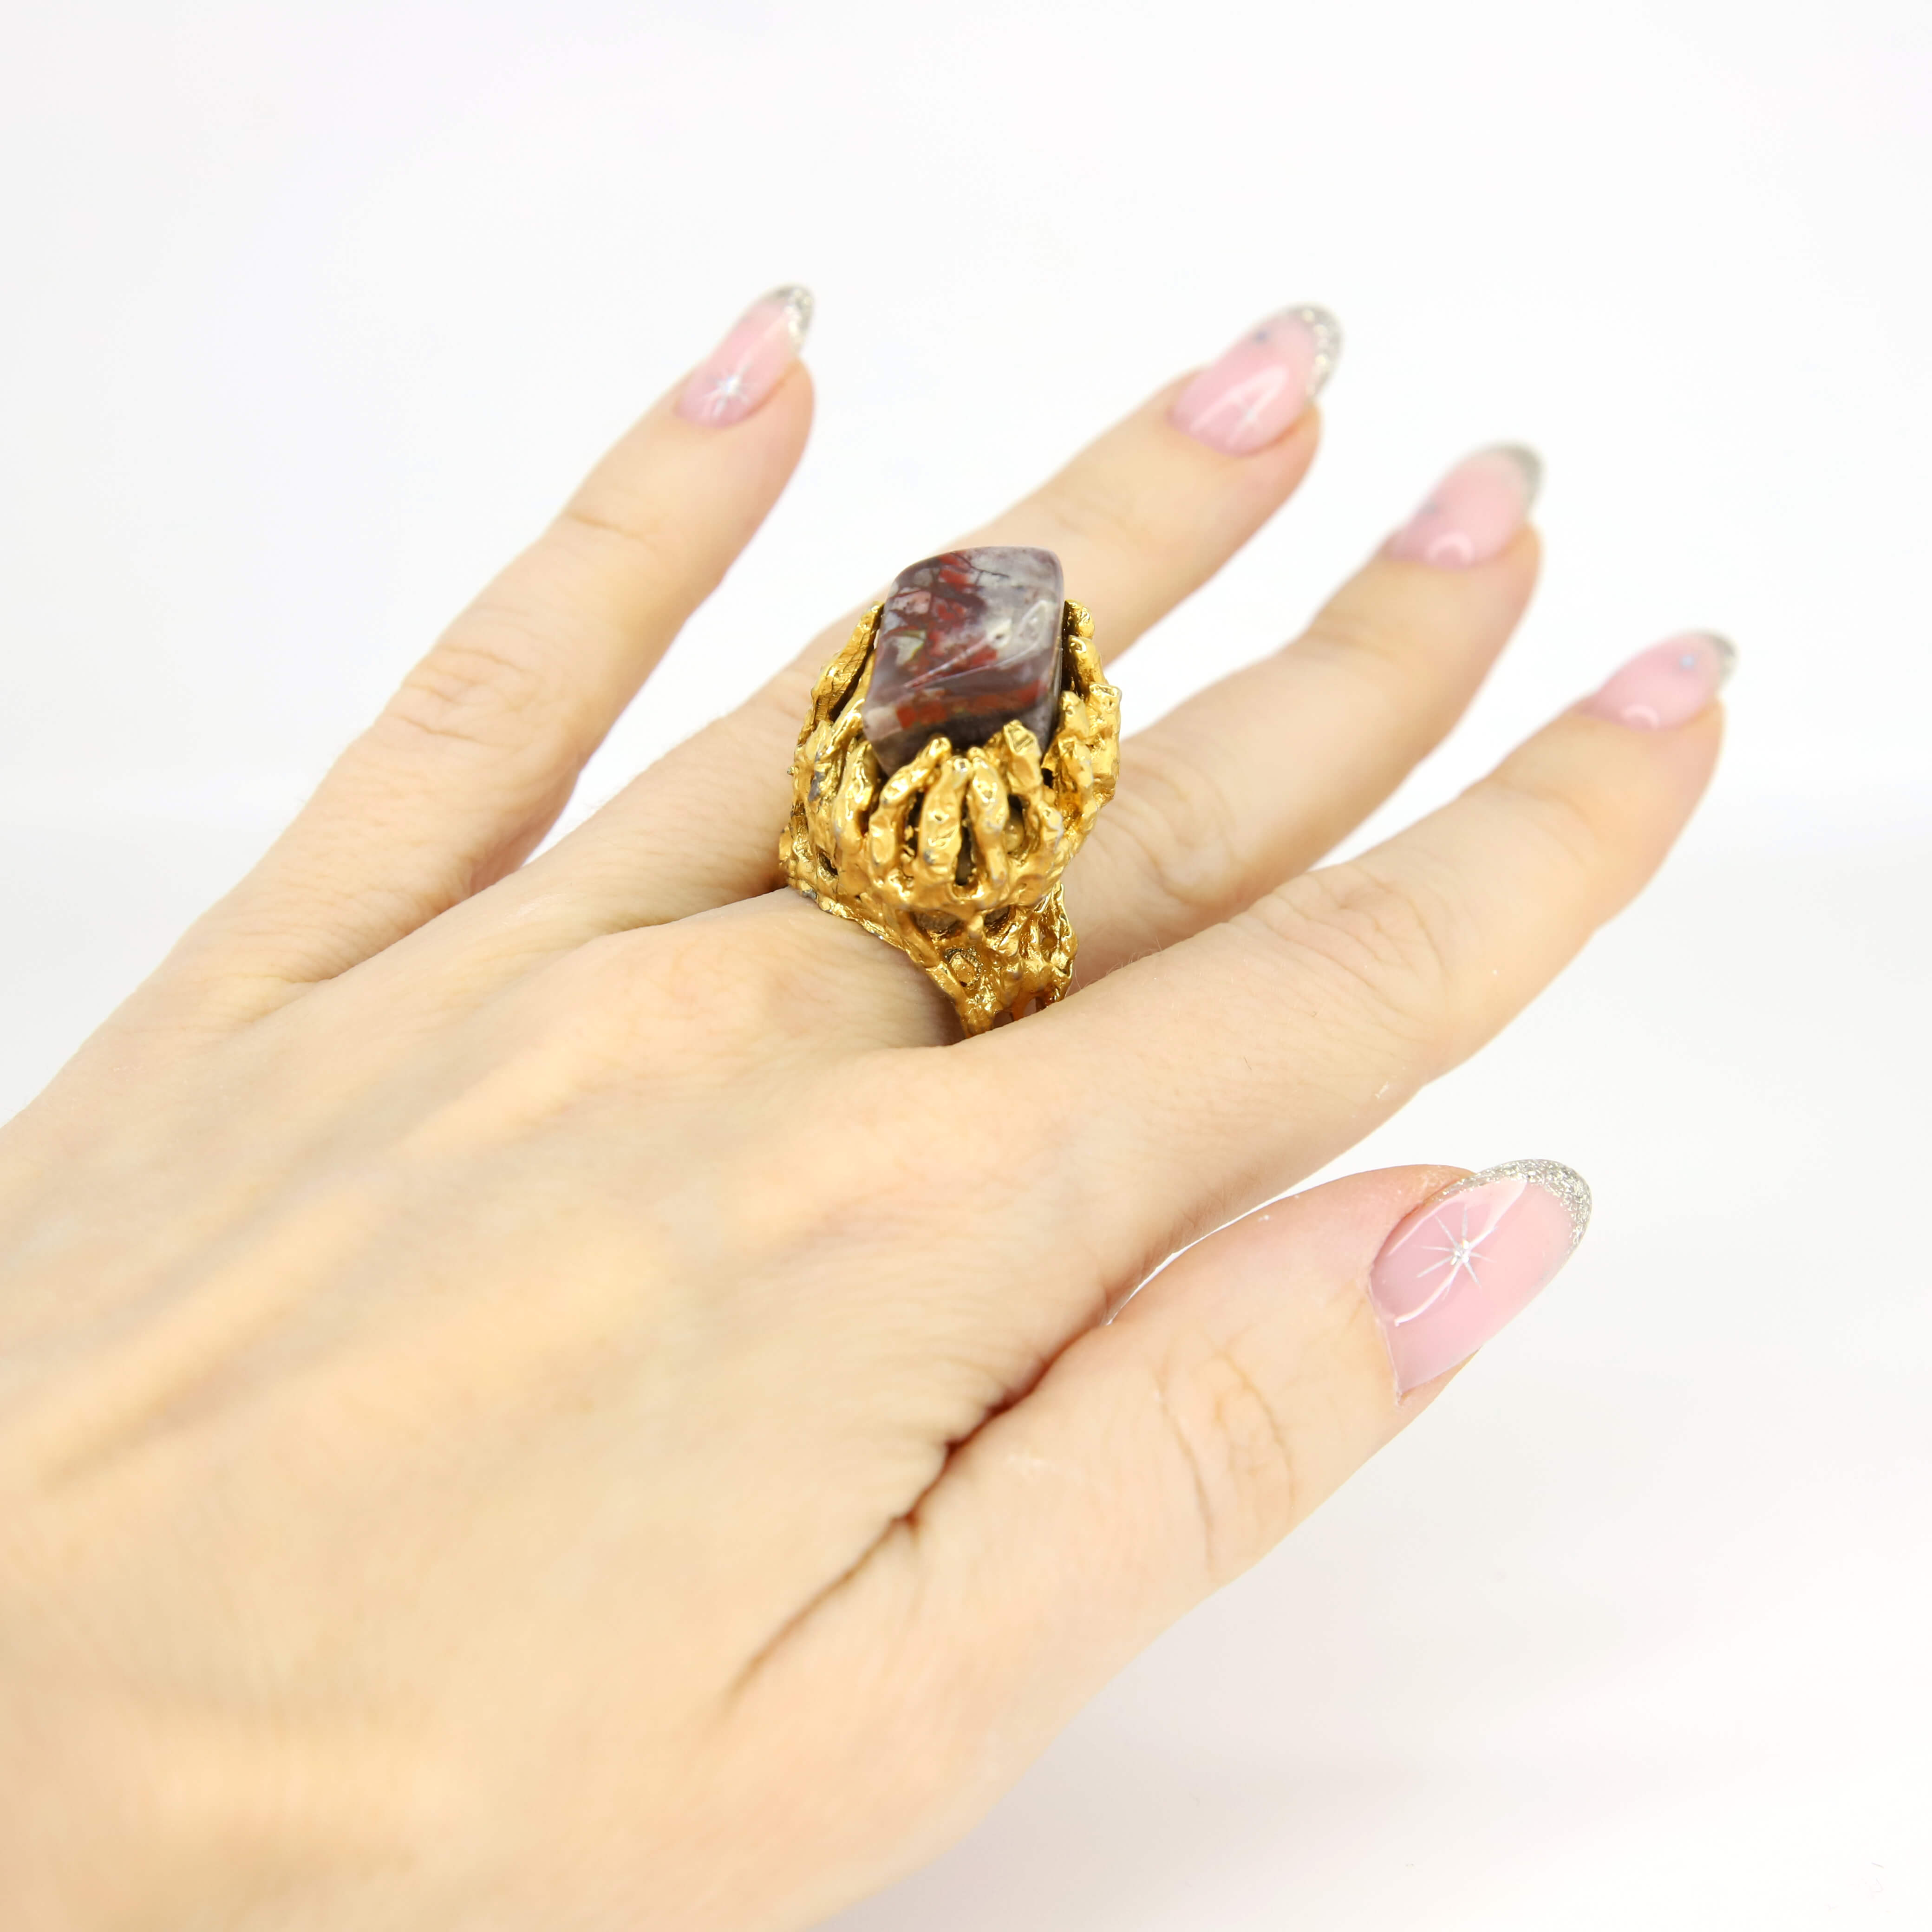 Винтажное кольцо Hobe размер 15.5-17.5, цвет Коричневый, фото 2